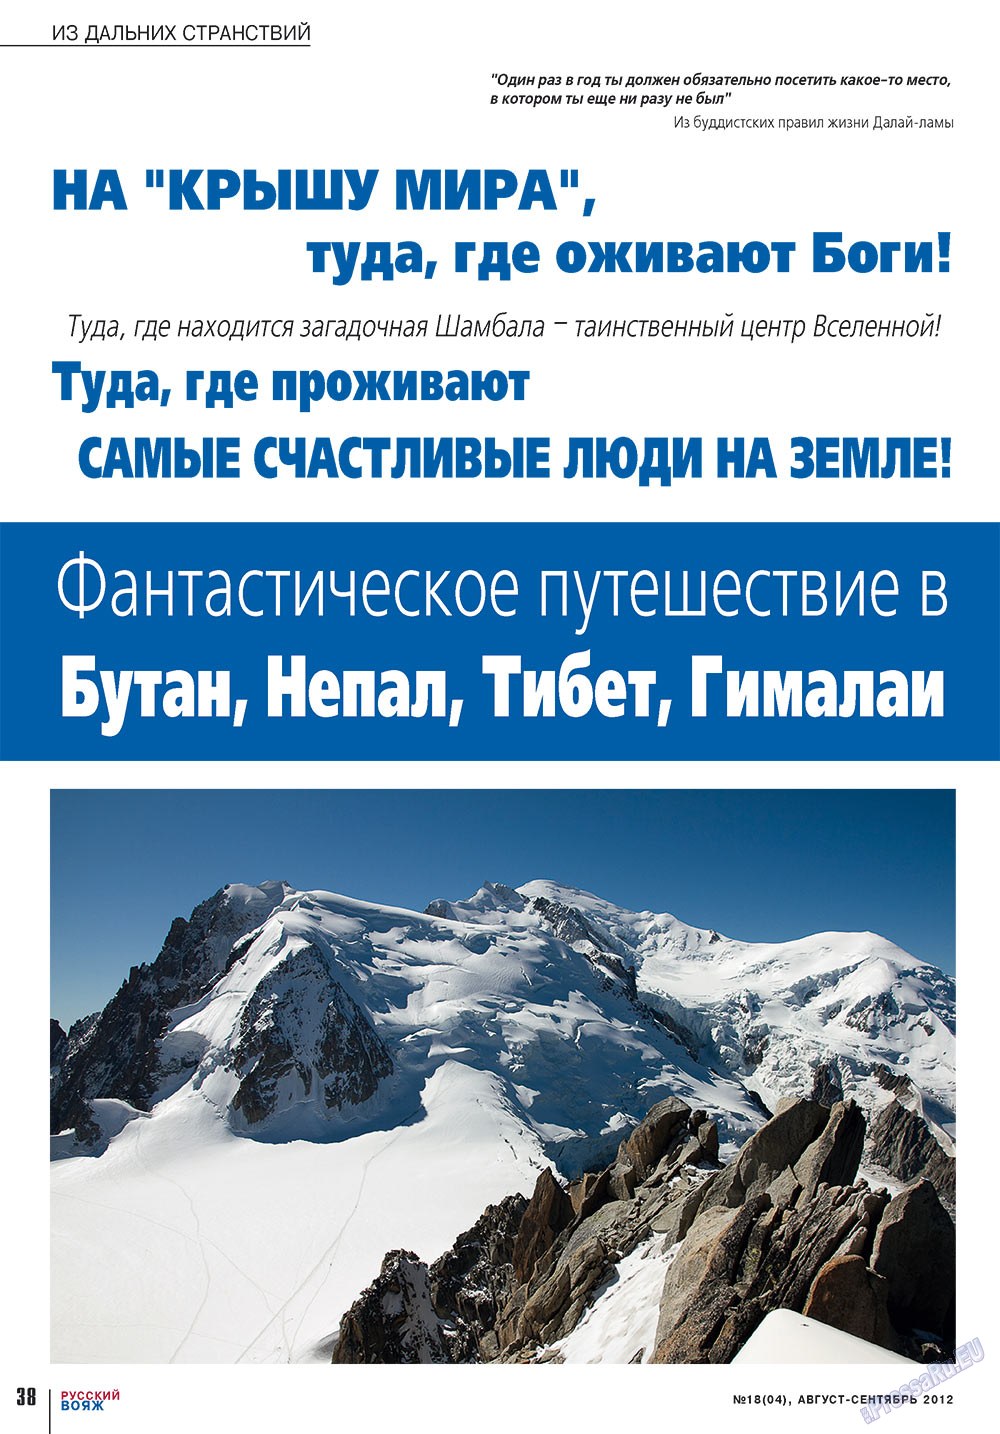 Русский вояж (журнал). 2012 год, номер 18, стр. 38